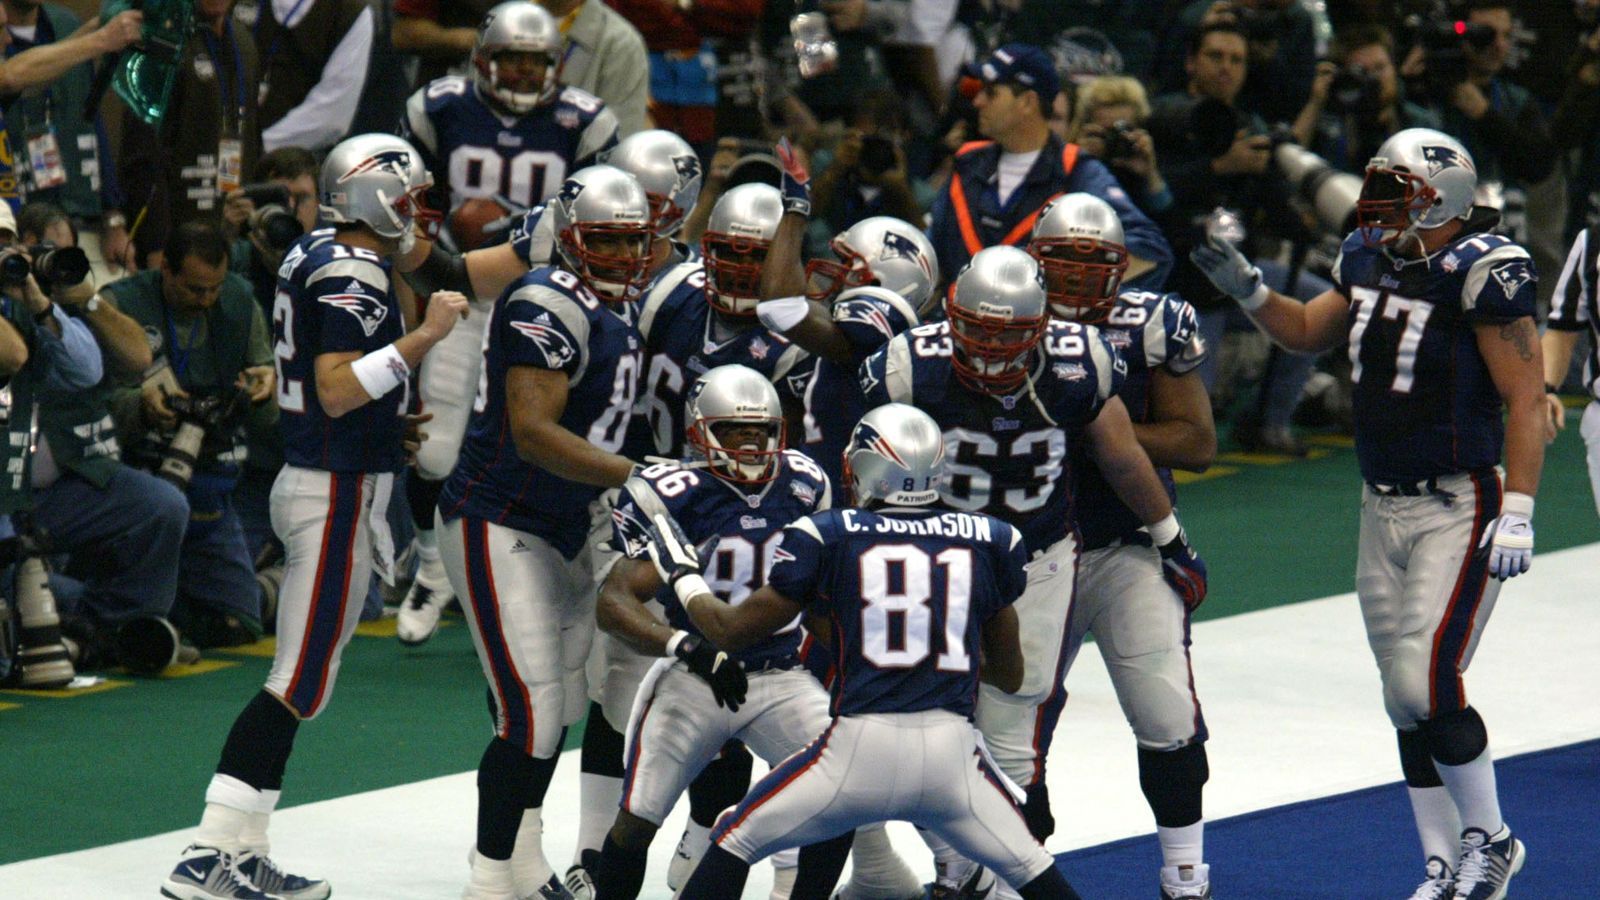 
                <strong>2002 - Super Bowl XXXVI -  New England Patriots</strong><br>
                2002 kam der Super-Bowl-Sieger aus New England. In einem dramatischen Finale sicherten sich die Patriots gegen die St. Louis Rams den Sieg erst durch ein Field Goal in der Schlussminute zum 20:17. Der erste Super-Bowl-Triumph in der Historie des Franchise-Unternehmens war gleichzeitig der Beginn einer sehr erfolgreichen Ära.
              